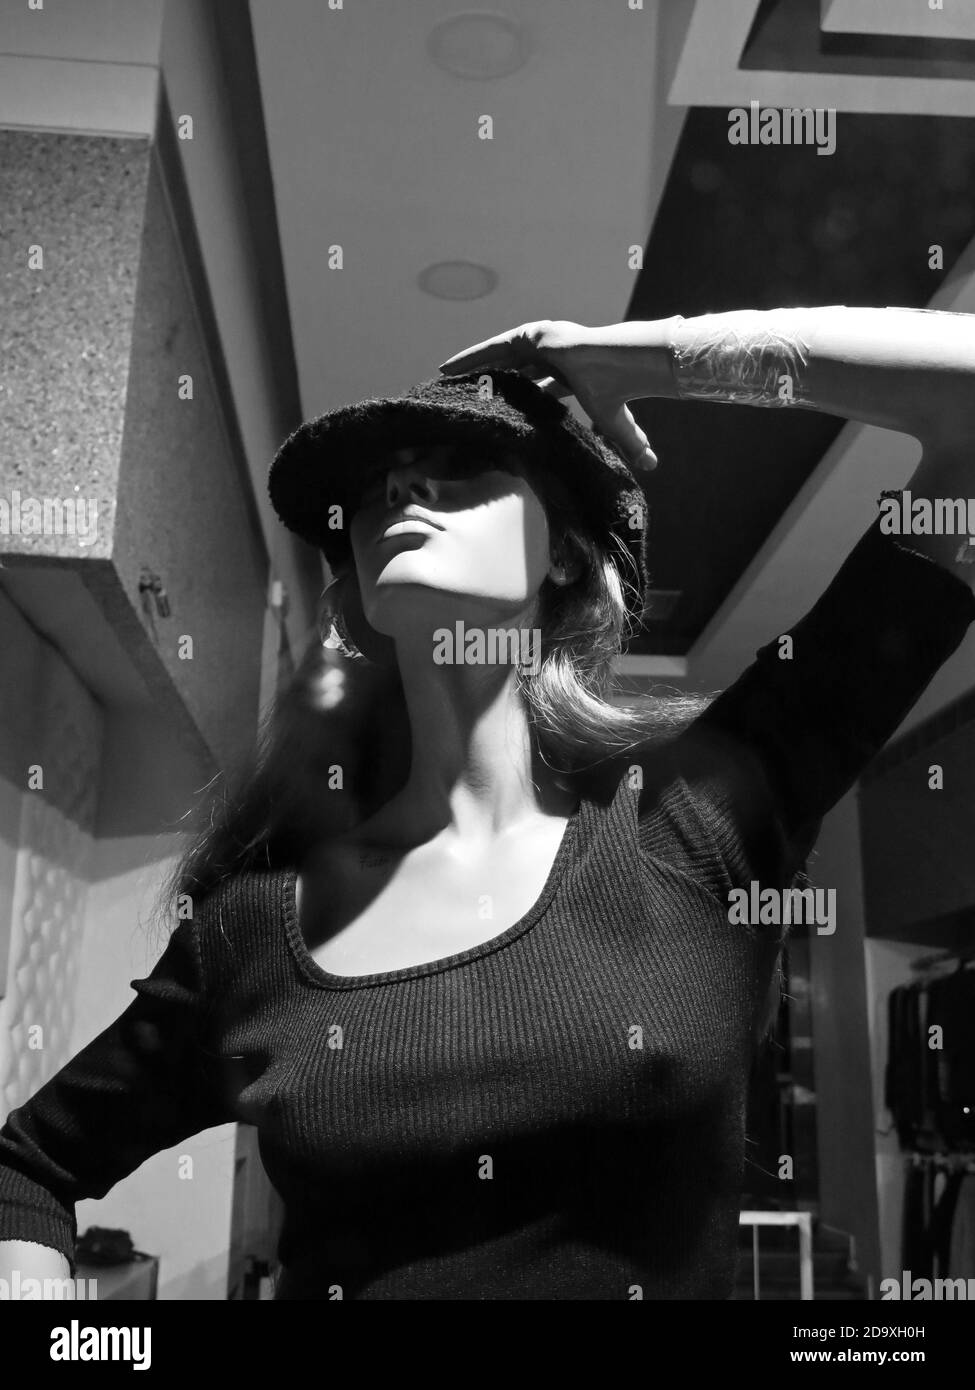 Manichetta femminile vestita con top blu scuro, con cappello. Concetto: Vendita al dettaglio. Foto Stock